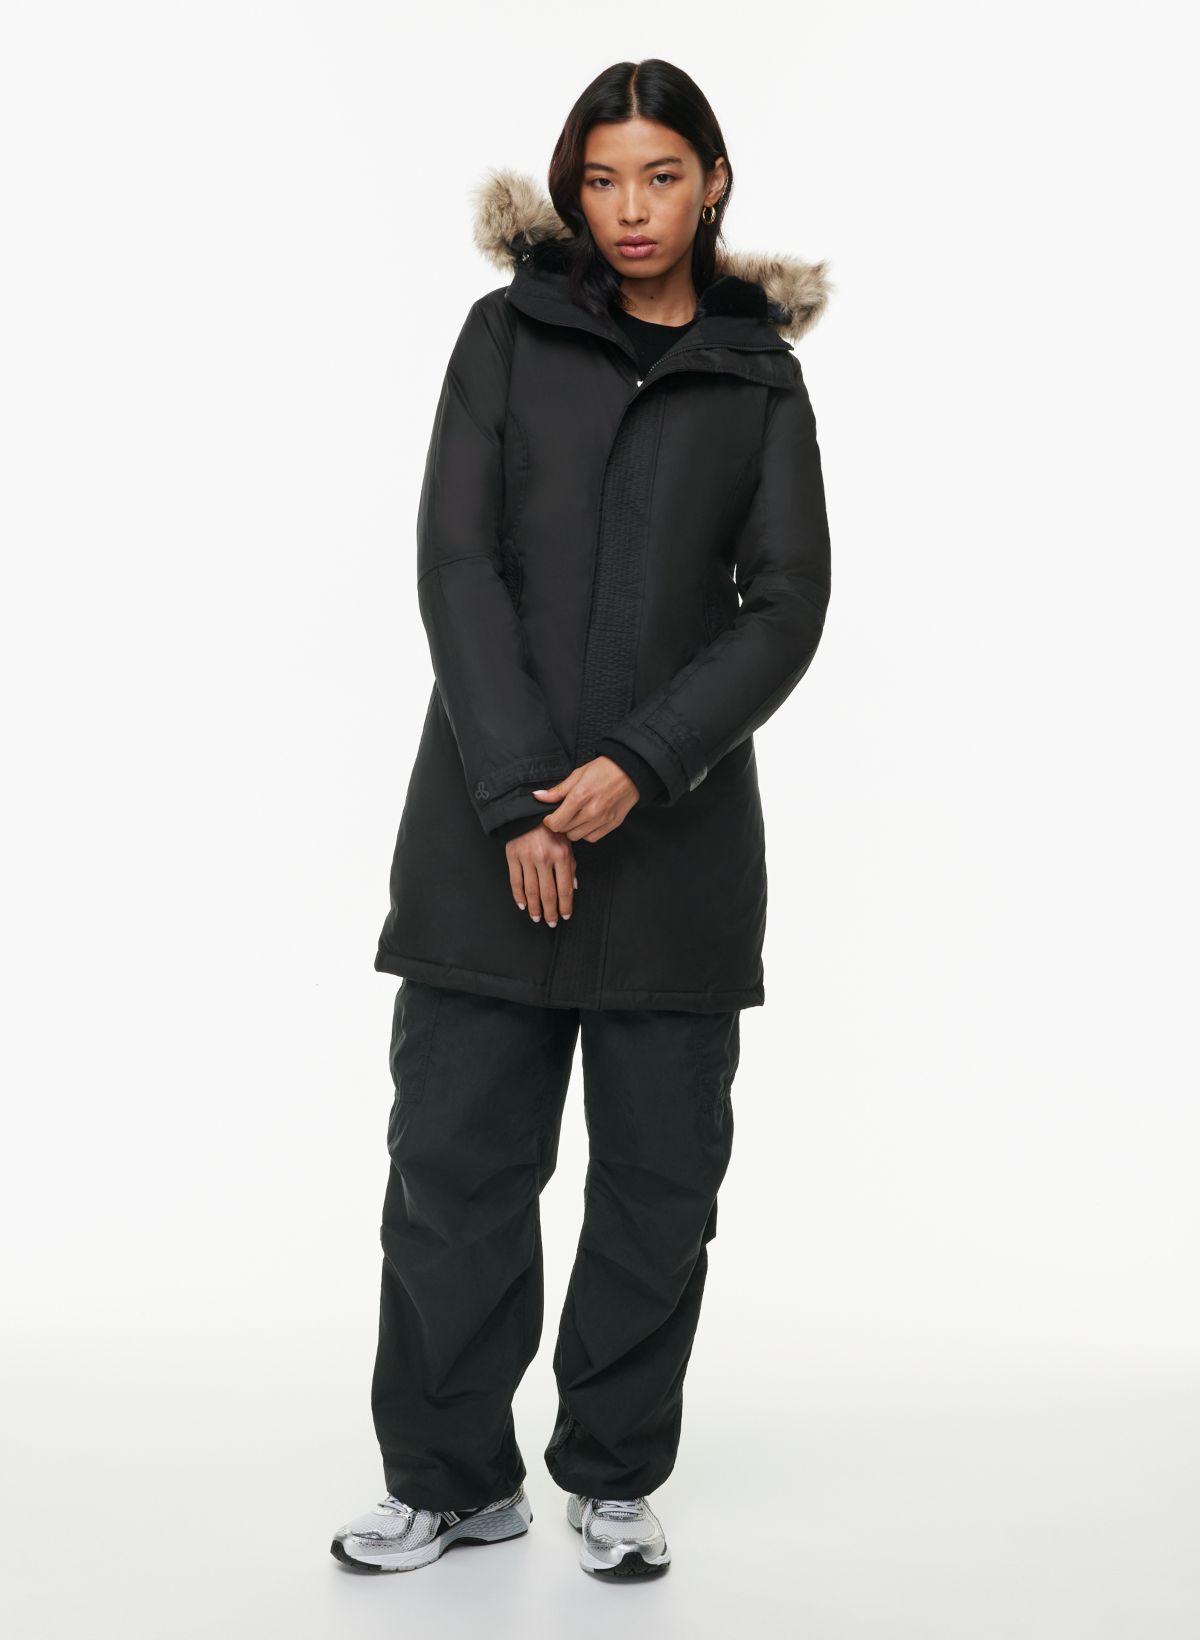 Buy F Fashiol.com Women Soft Winter Inner Wear Woolen Thermal Top